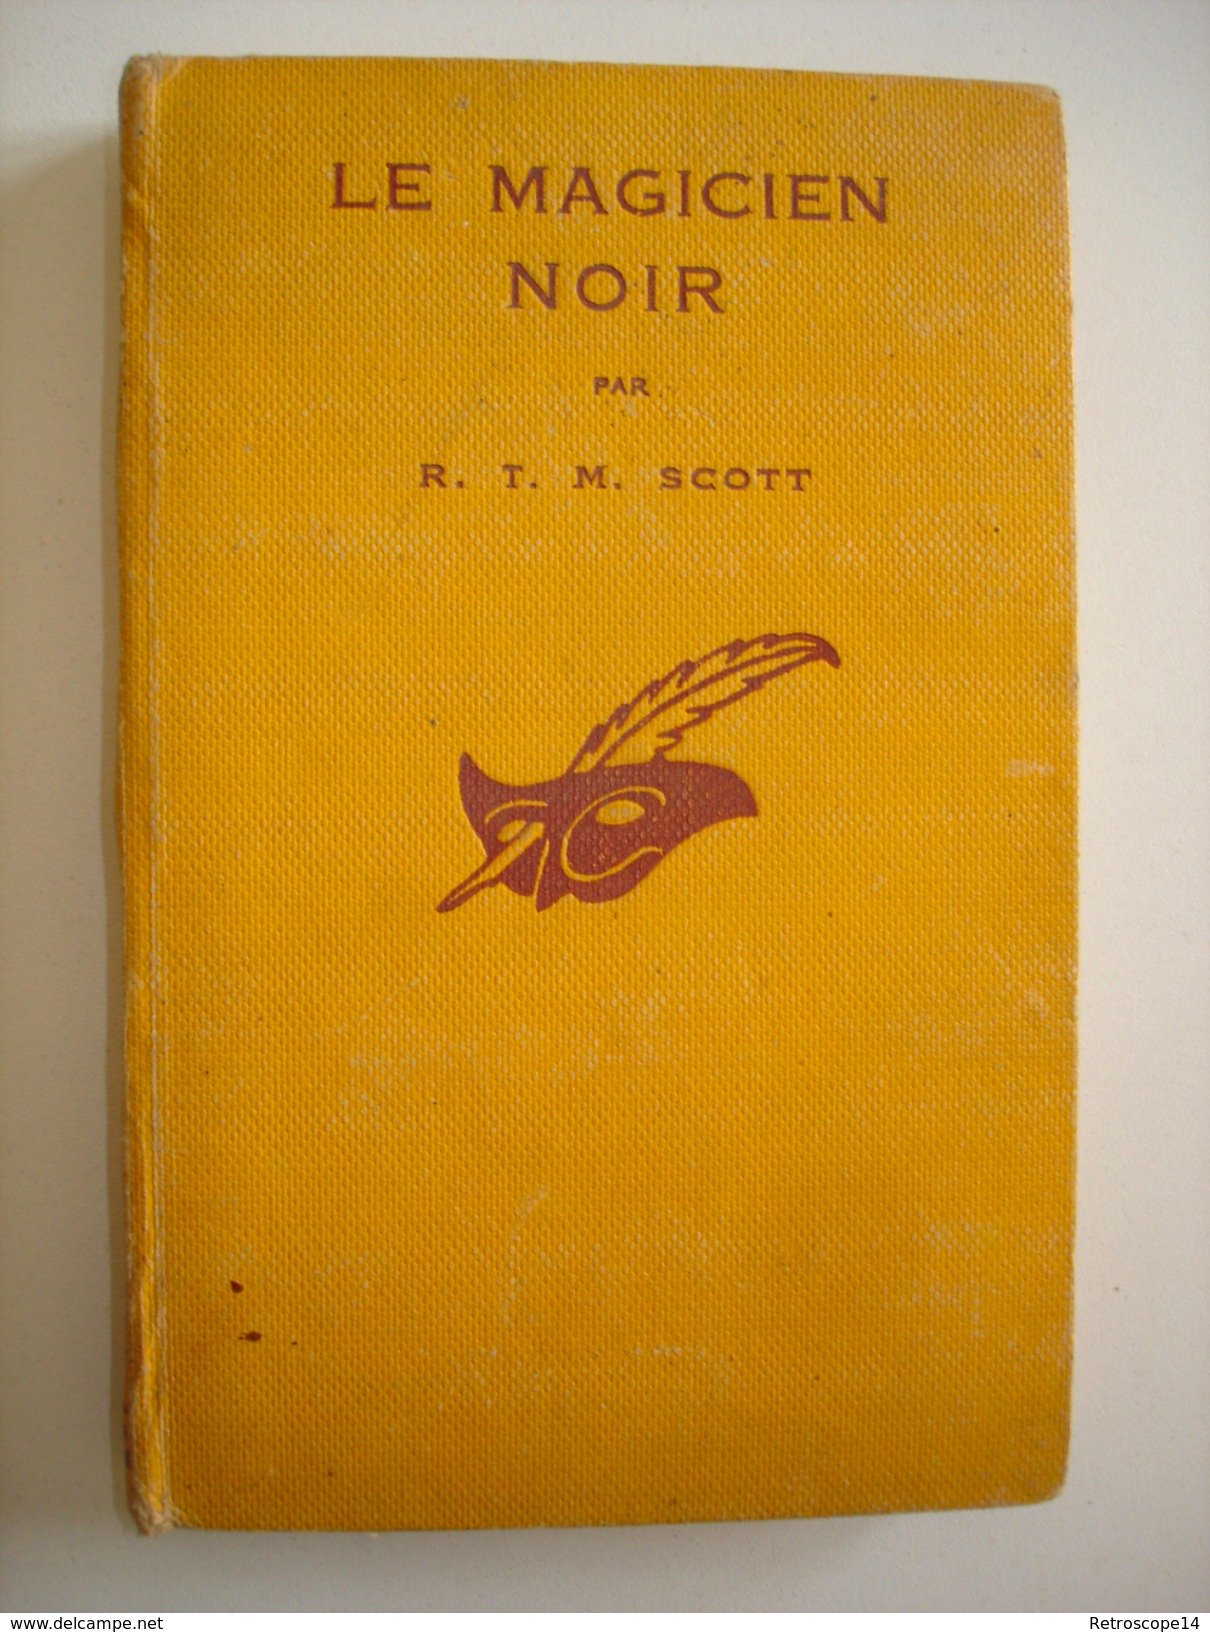 R.T.M. SCOTT, LE MAGICIEN NOIR, LE MASQUE N°143, 1933. E.O. Cartonnée. - Le Masque